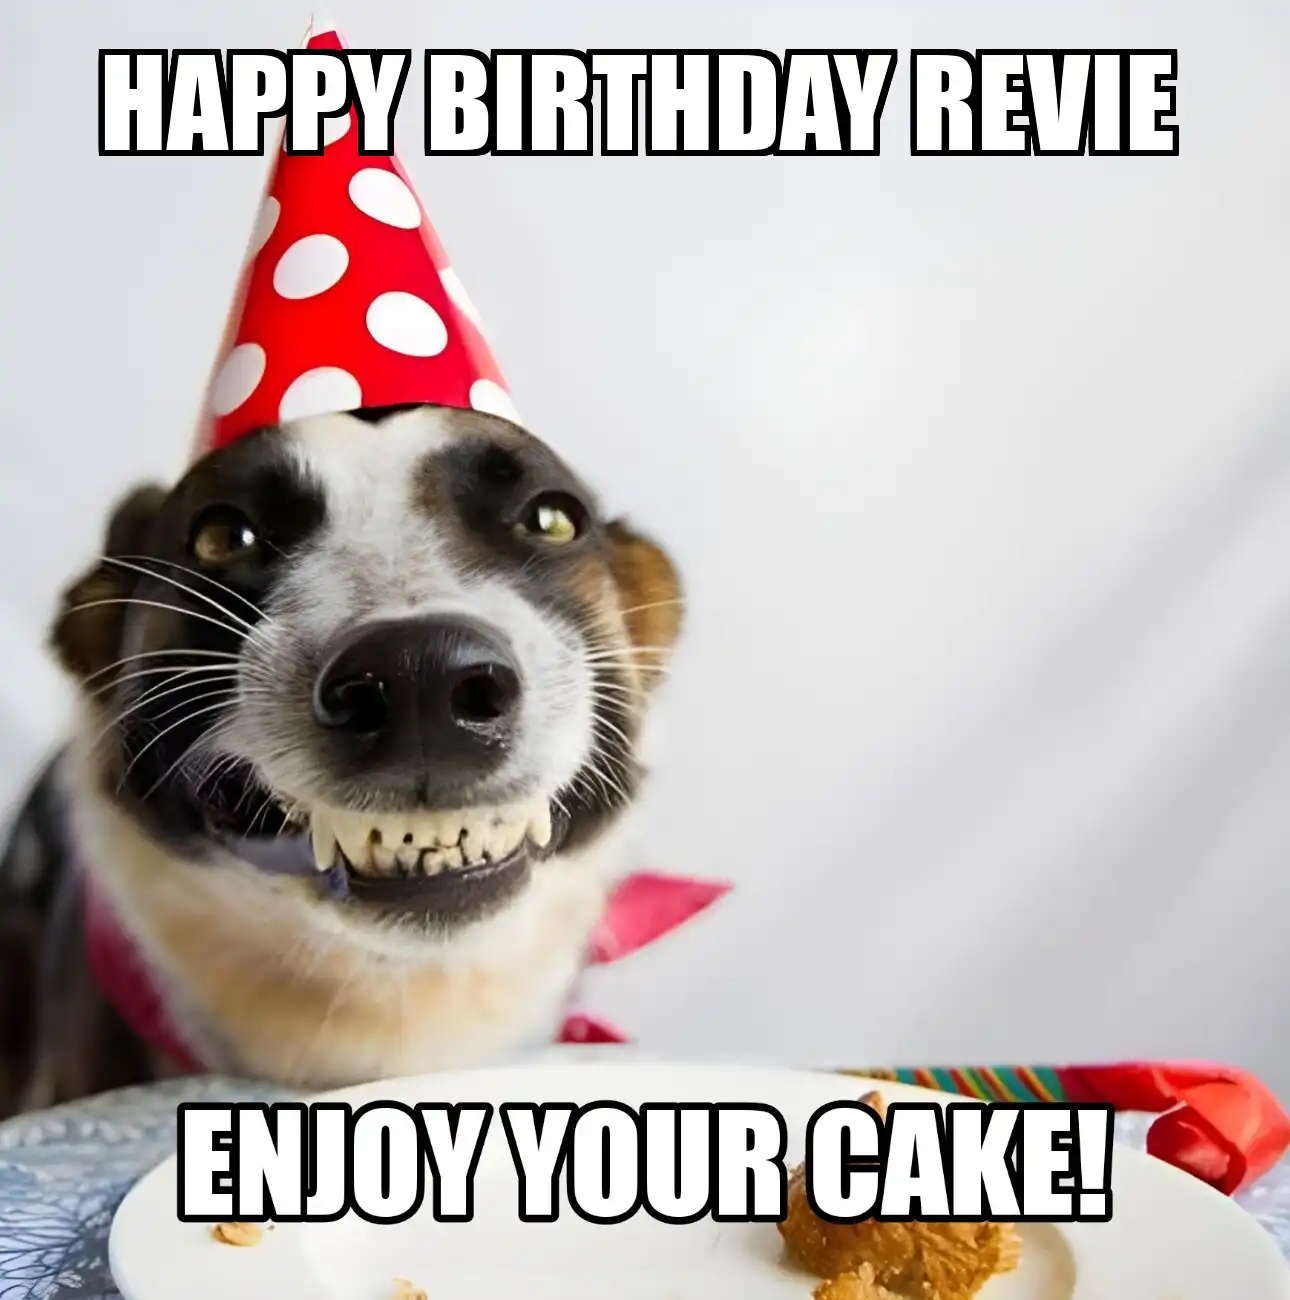 Happy Birthday Revie Enjoy Your Cake Dog Meme